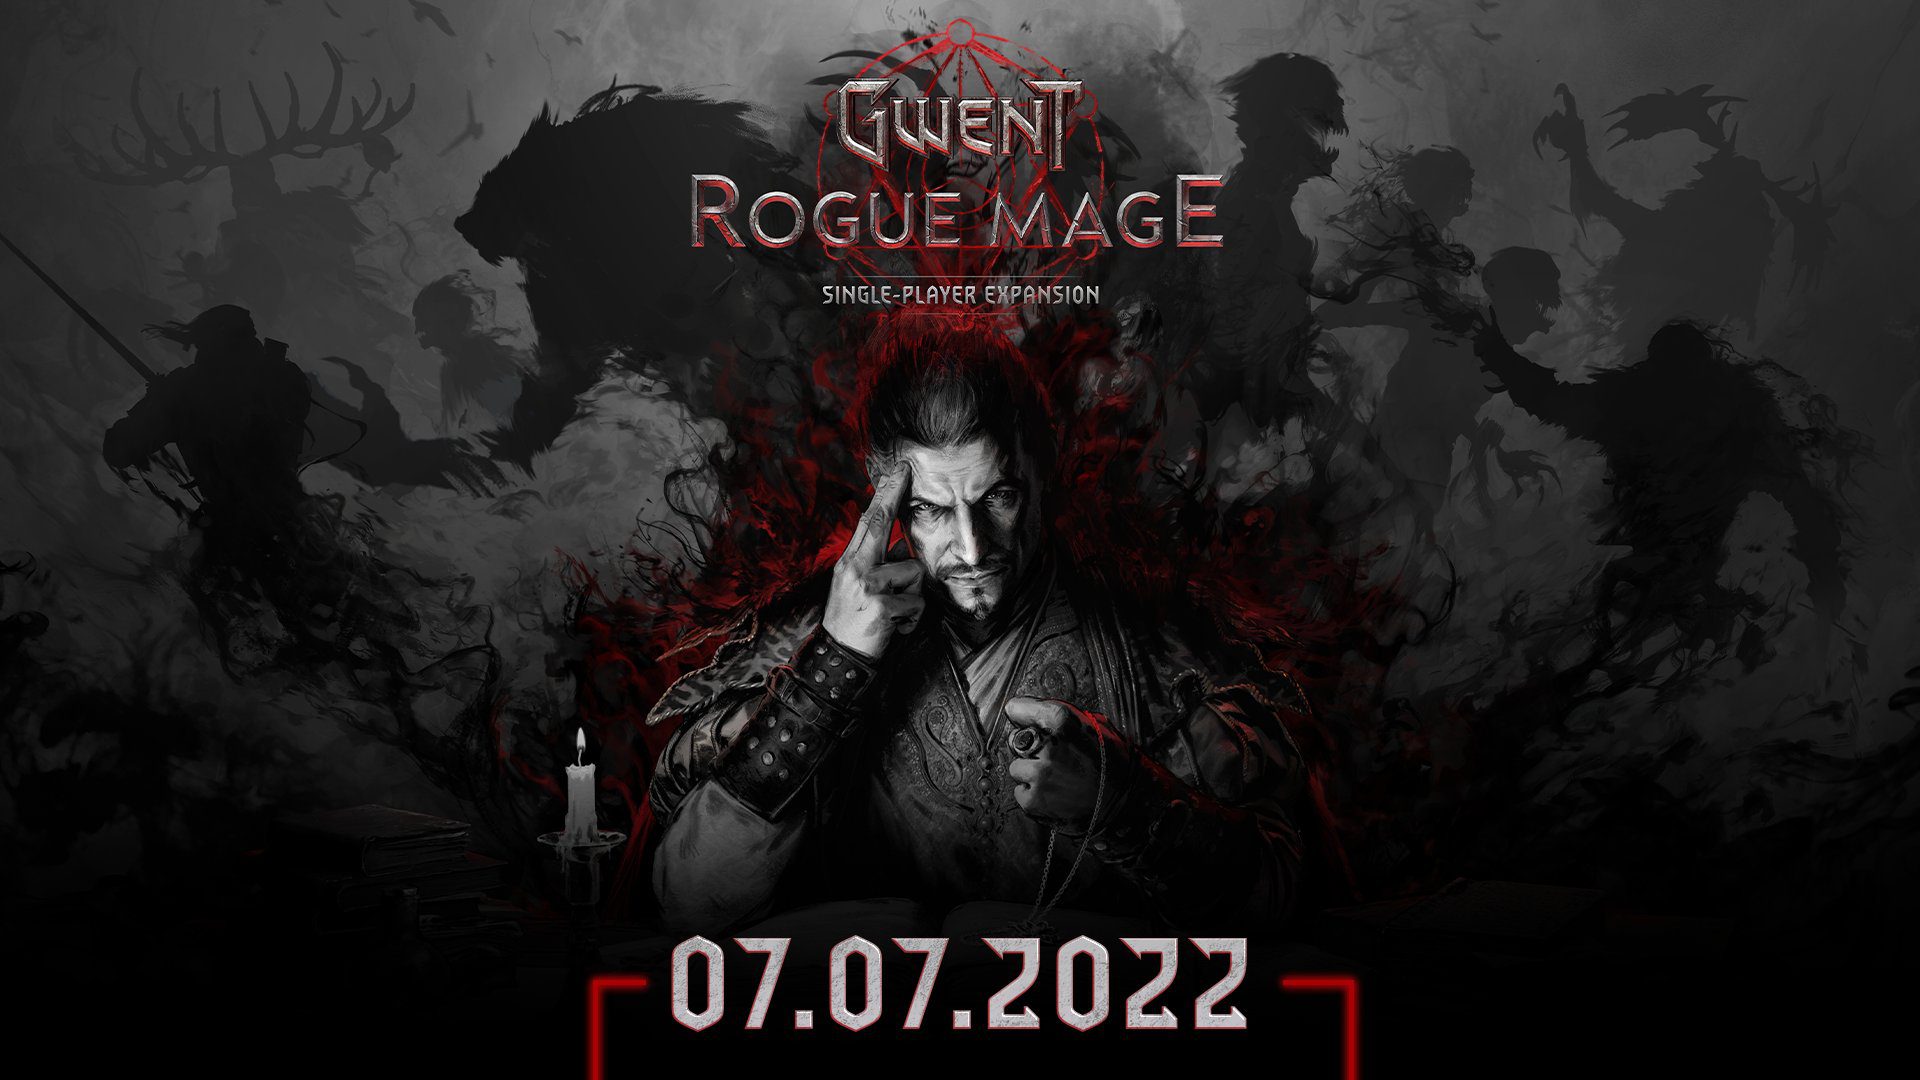 الإعلان عن Gwent: Rogue Mage والإطلاق غداً 